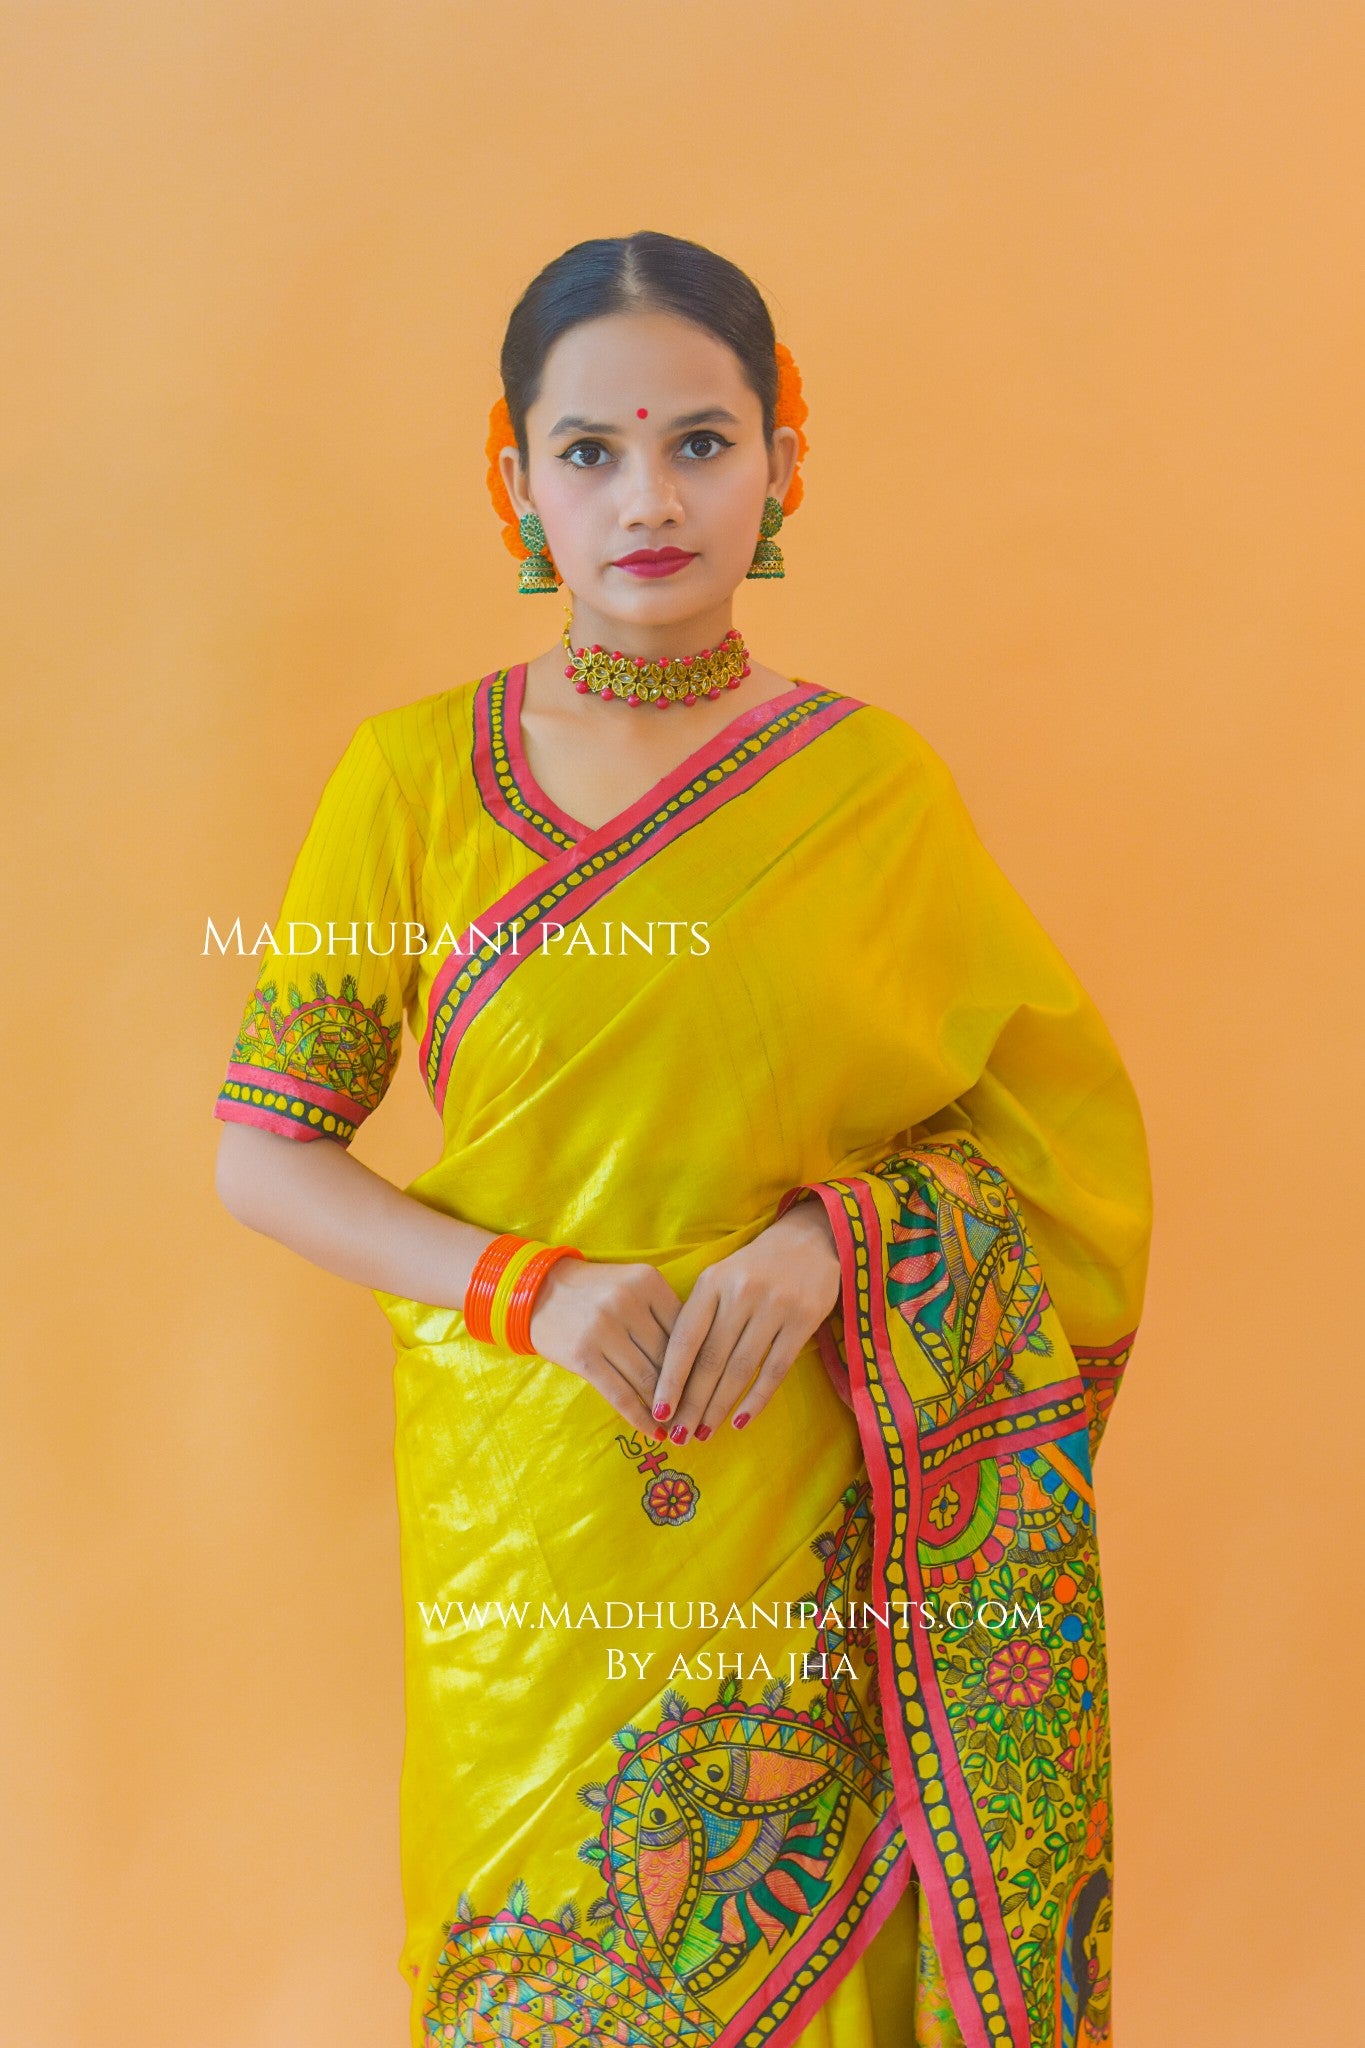 SHIV PARVATI VIVAH Hand-painted Madhubani Tussar Silk Saree Blouse Set